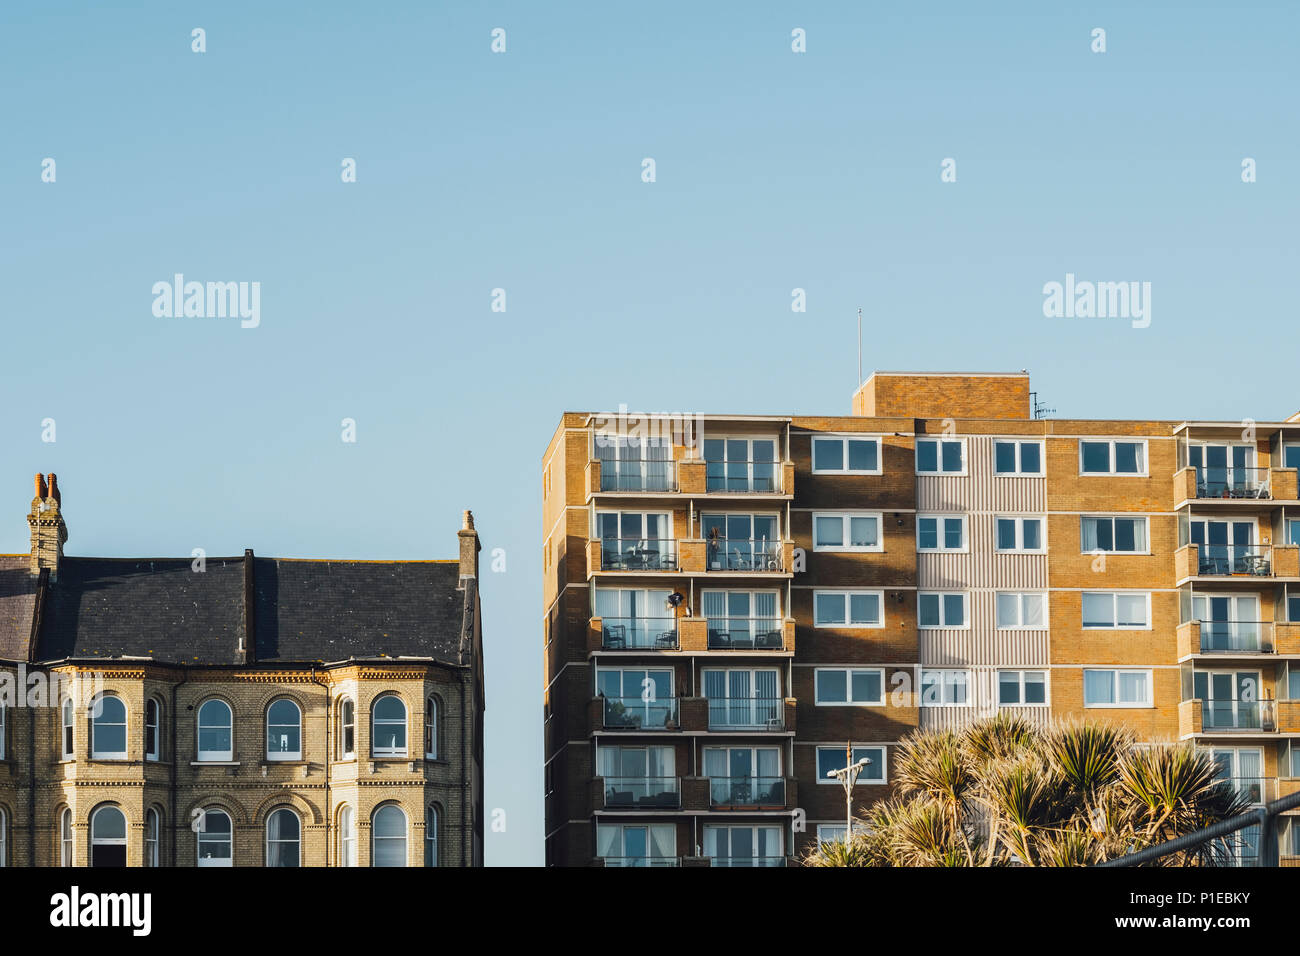 Facade, residential houses, Brighton, England Stock Photo